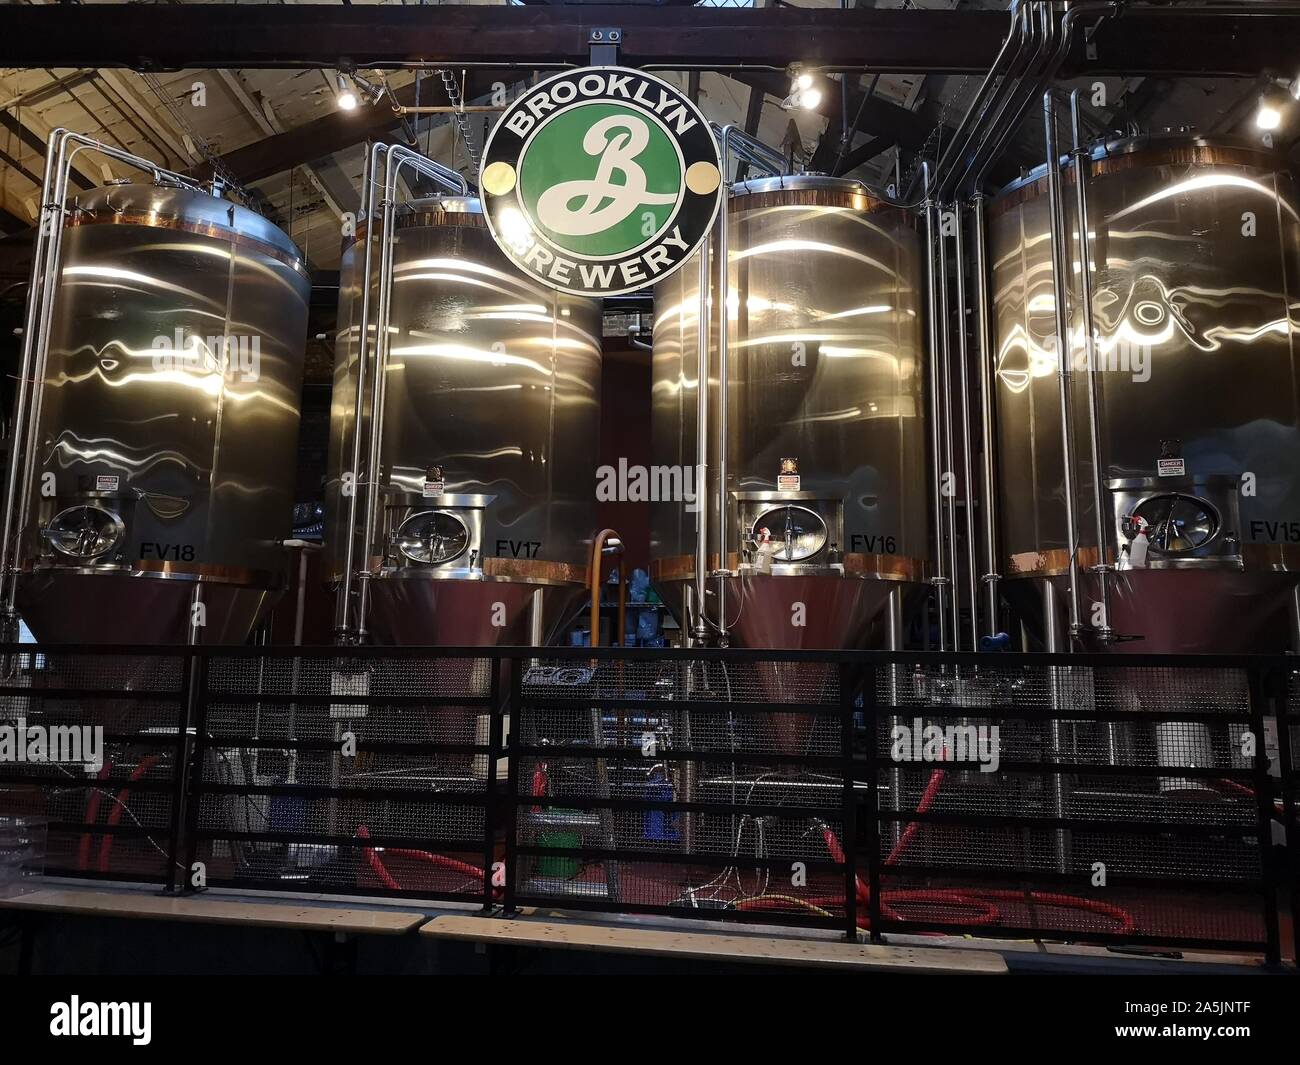 Nueva York, Estados Unidos. 12 Sep, 2019. Los tanques están de pie en una sala de la Brooklyn Brewery. La cervecería Brooklyn en el distrito del mismo nombre, fue fundada en 1988. La Brooklyn Brewery logotipo fue creado por el diseñador gráfico Milton Glaser, quien también diseñó el 'I love NY' logo. Crédito: Alexandra Schuler/dpa/Alamy Live News Foto de stock